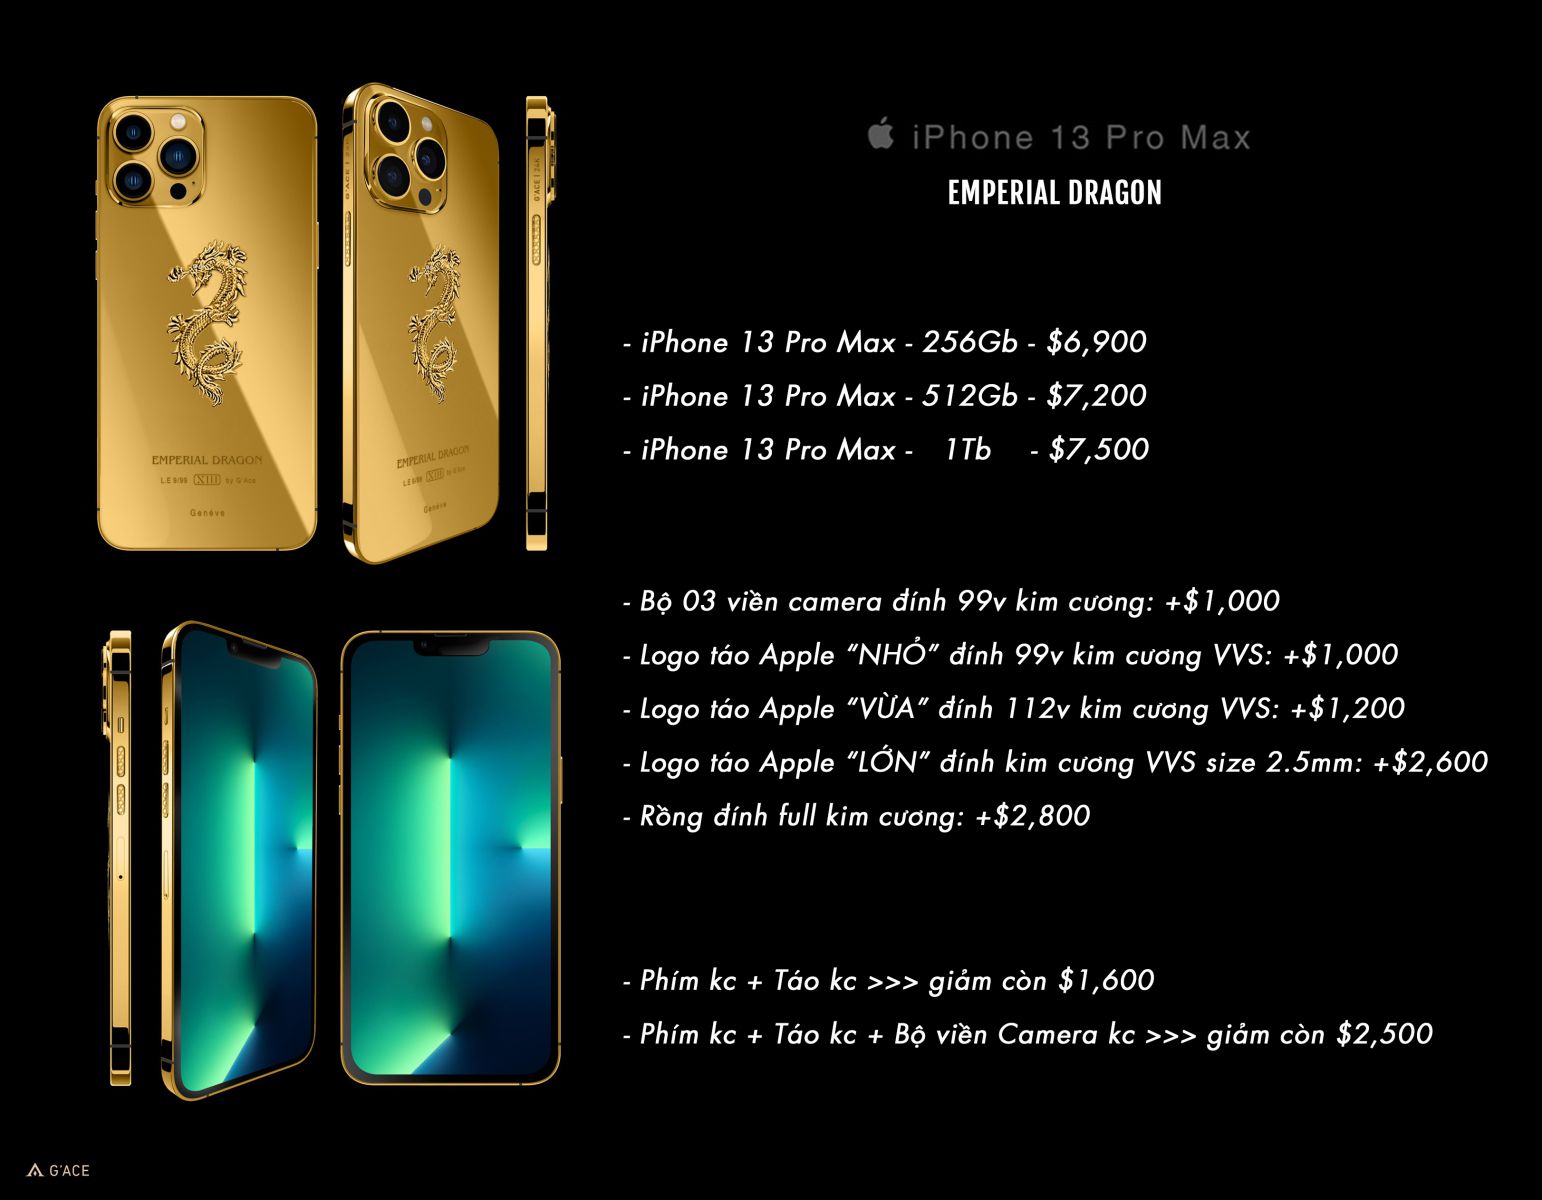 Sản phẩm iPhone 13 Pro Max Mạ Vàng sẽ khiến bạn ngạc nhiên về thiết kế đẳng cấp và sự sang trọng. Hình ảnh liên quan đến từ khóa này chắc chắn sẽ thu hút sự chú ý của bạn!